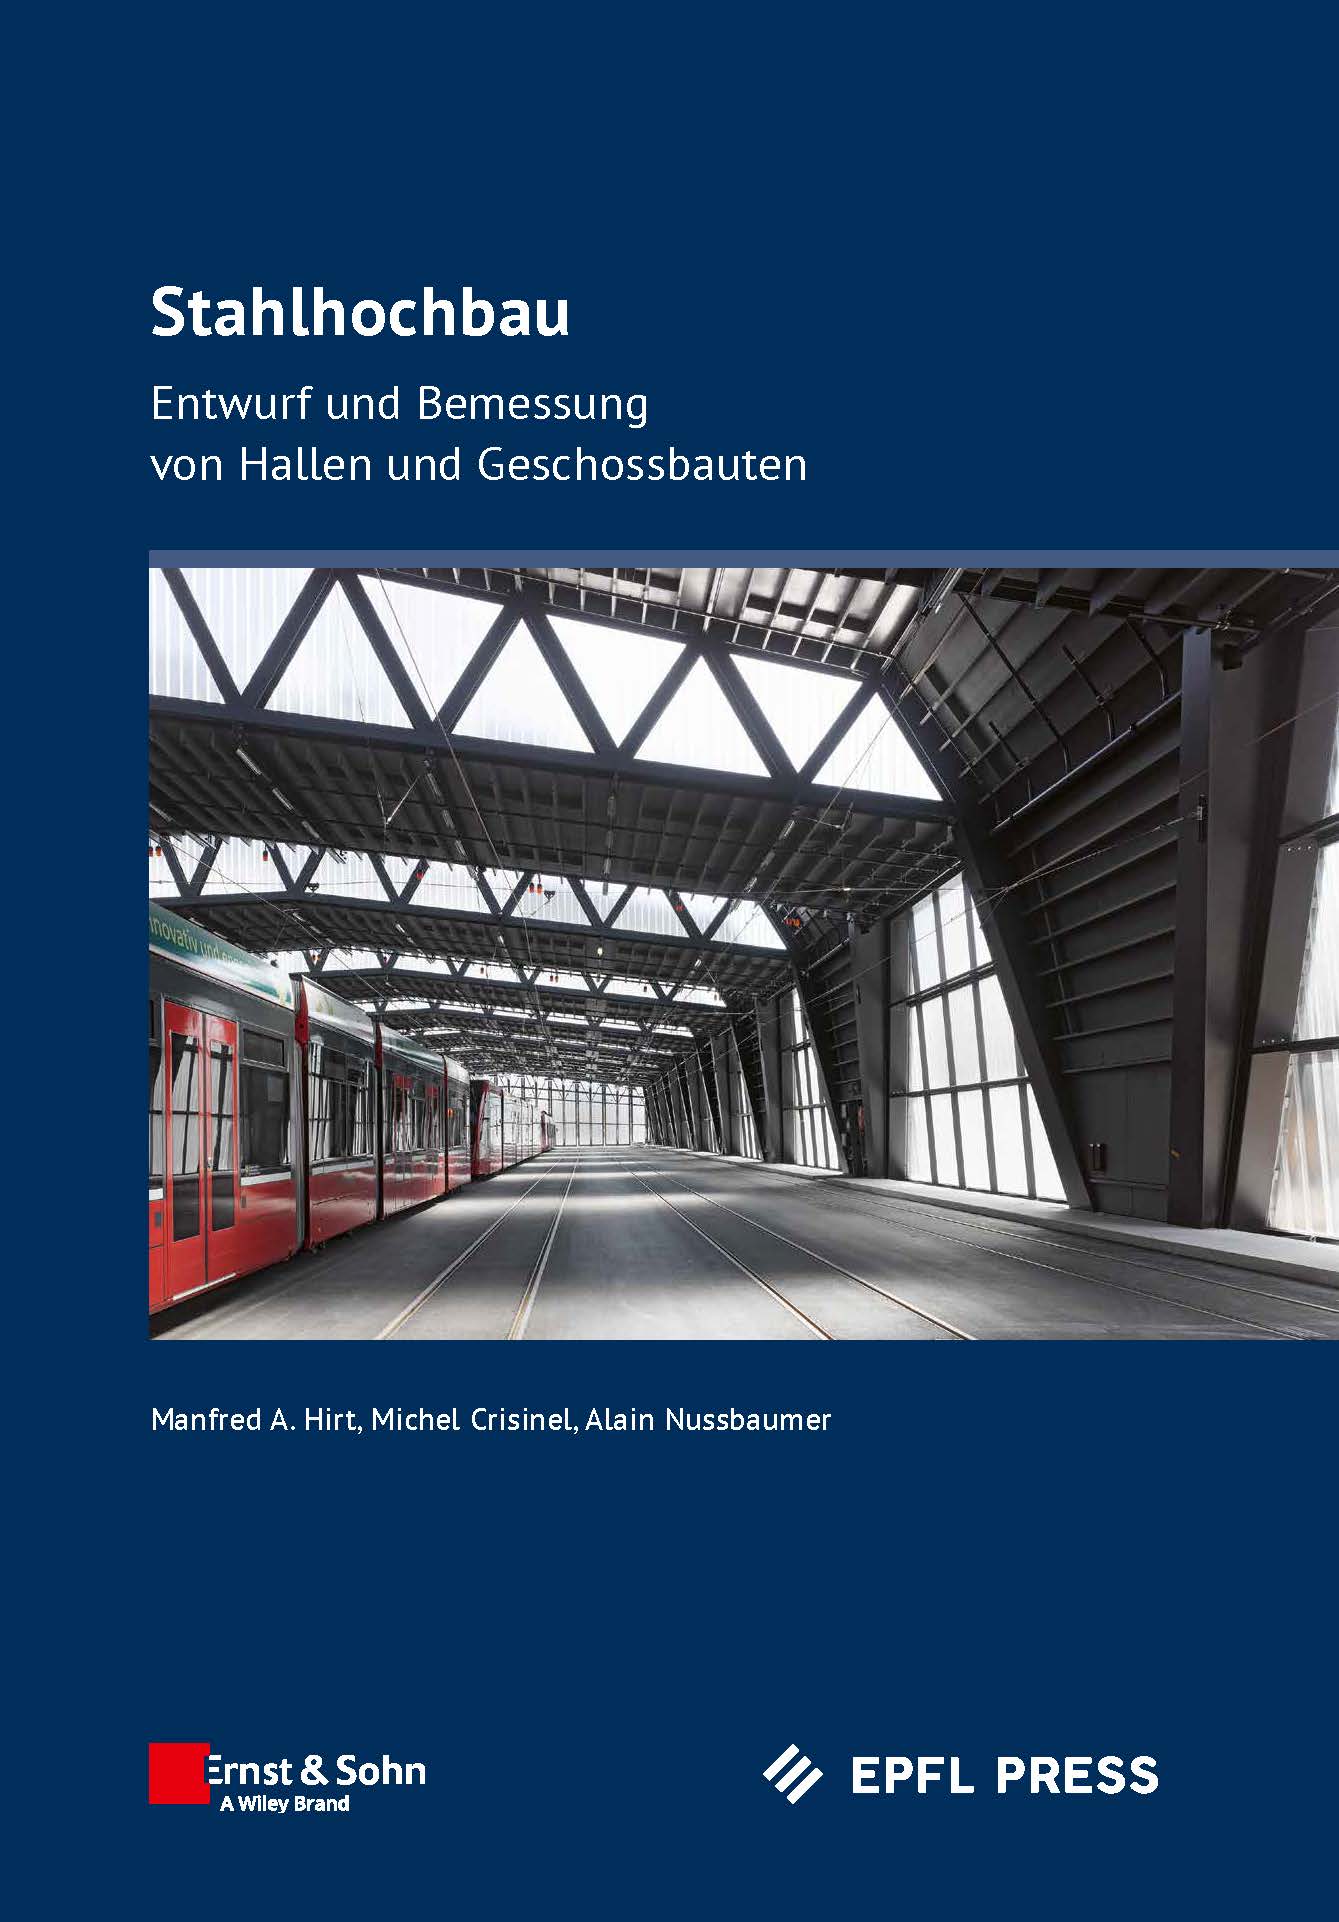 Stahlhochbau - Entwurf und Bemessung von Hallen und Geschossbauten 